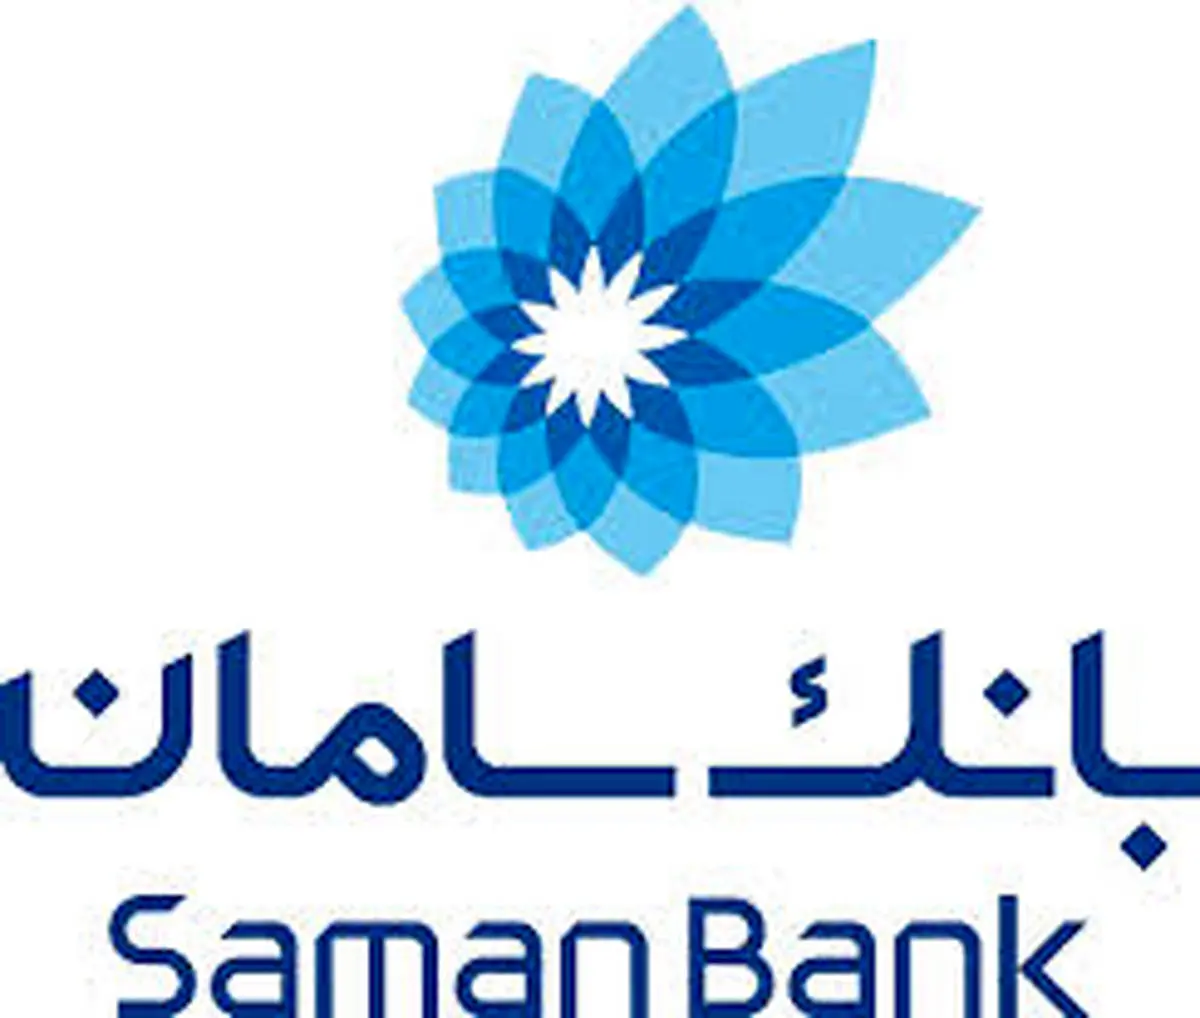 خدمات ویژه بانک سامان برای فعالان صنف خودرو

